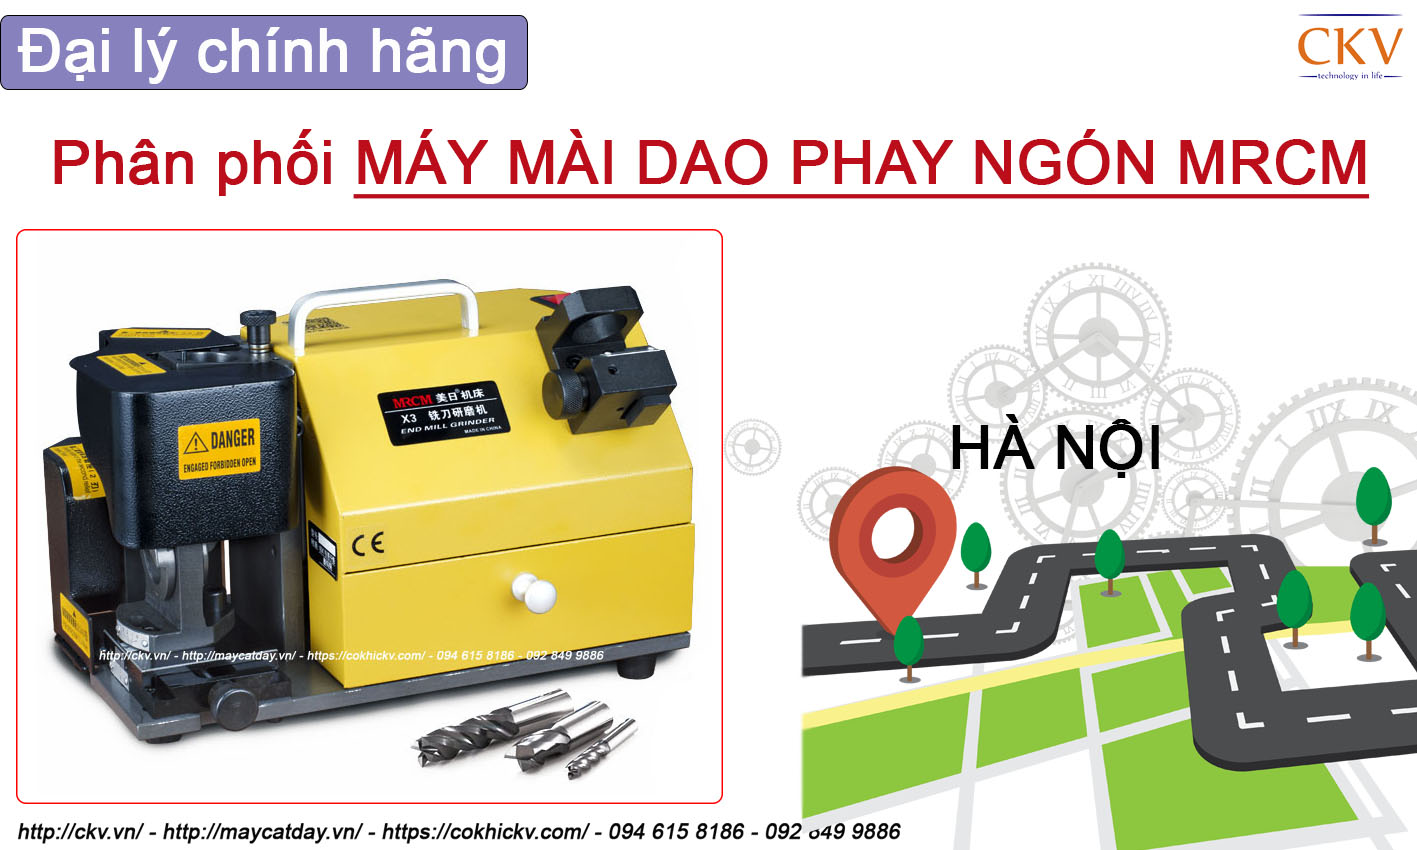 Đại lí CKV phân phối máy mài dao phay ngón MRCM chính hãng tại Hà Nội